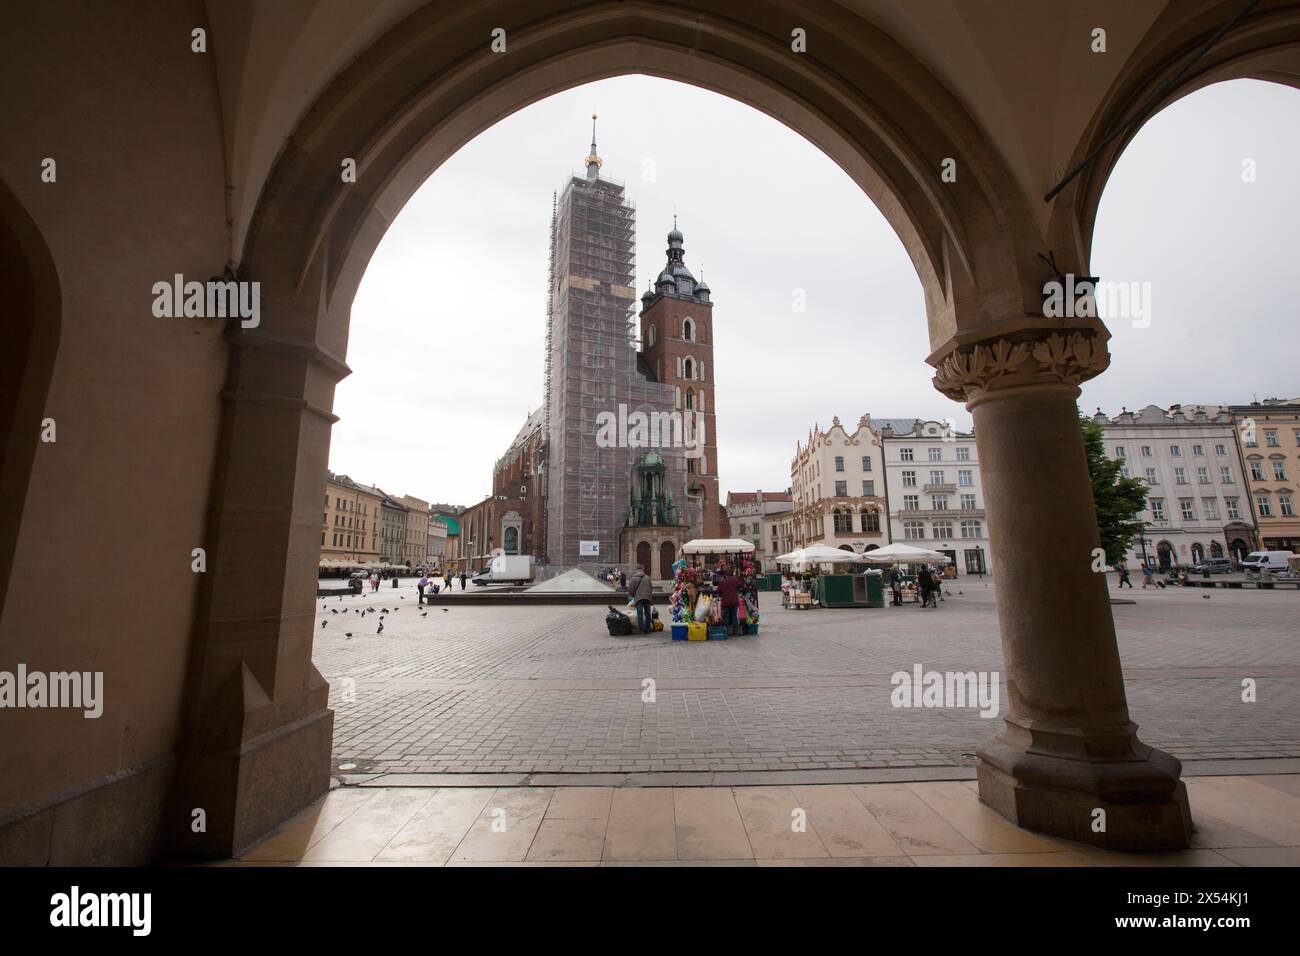 St. Mary's Basilica in Krakow - Bazylika Mariacka w Krakowie,  Rynek Głowny W Krakowie Stock Photo